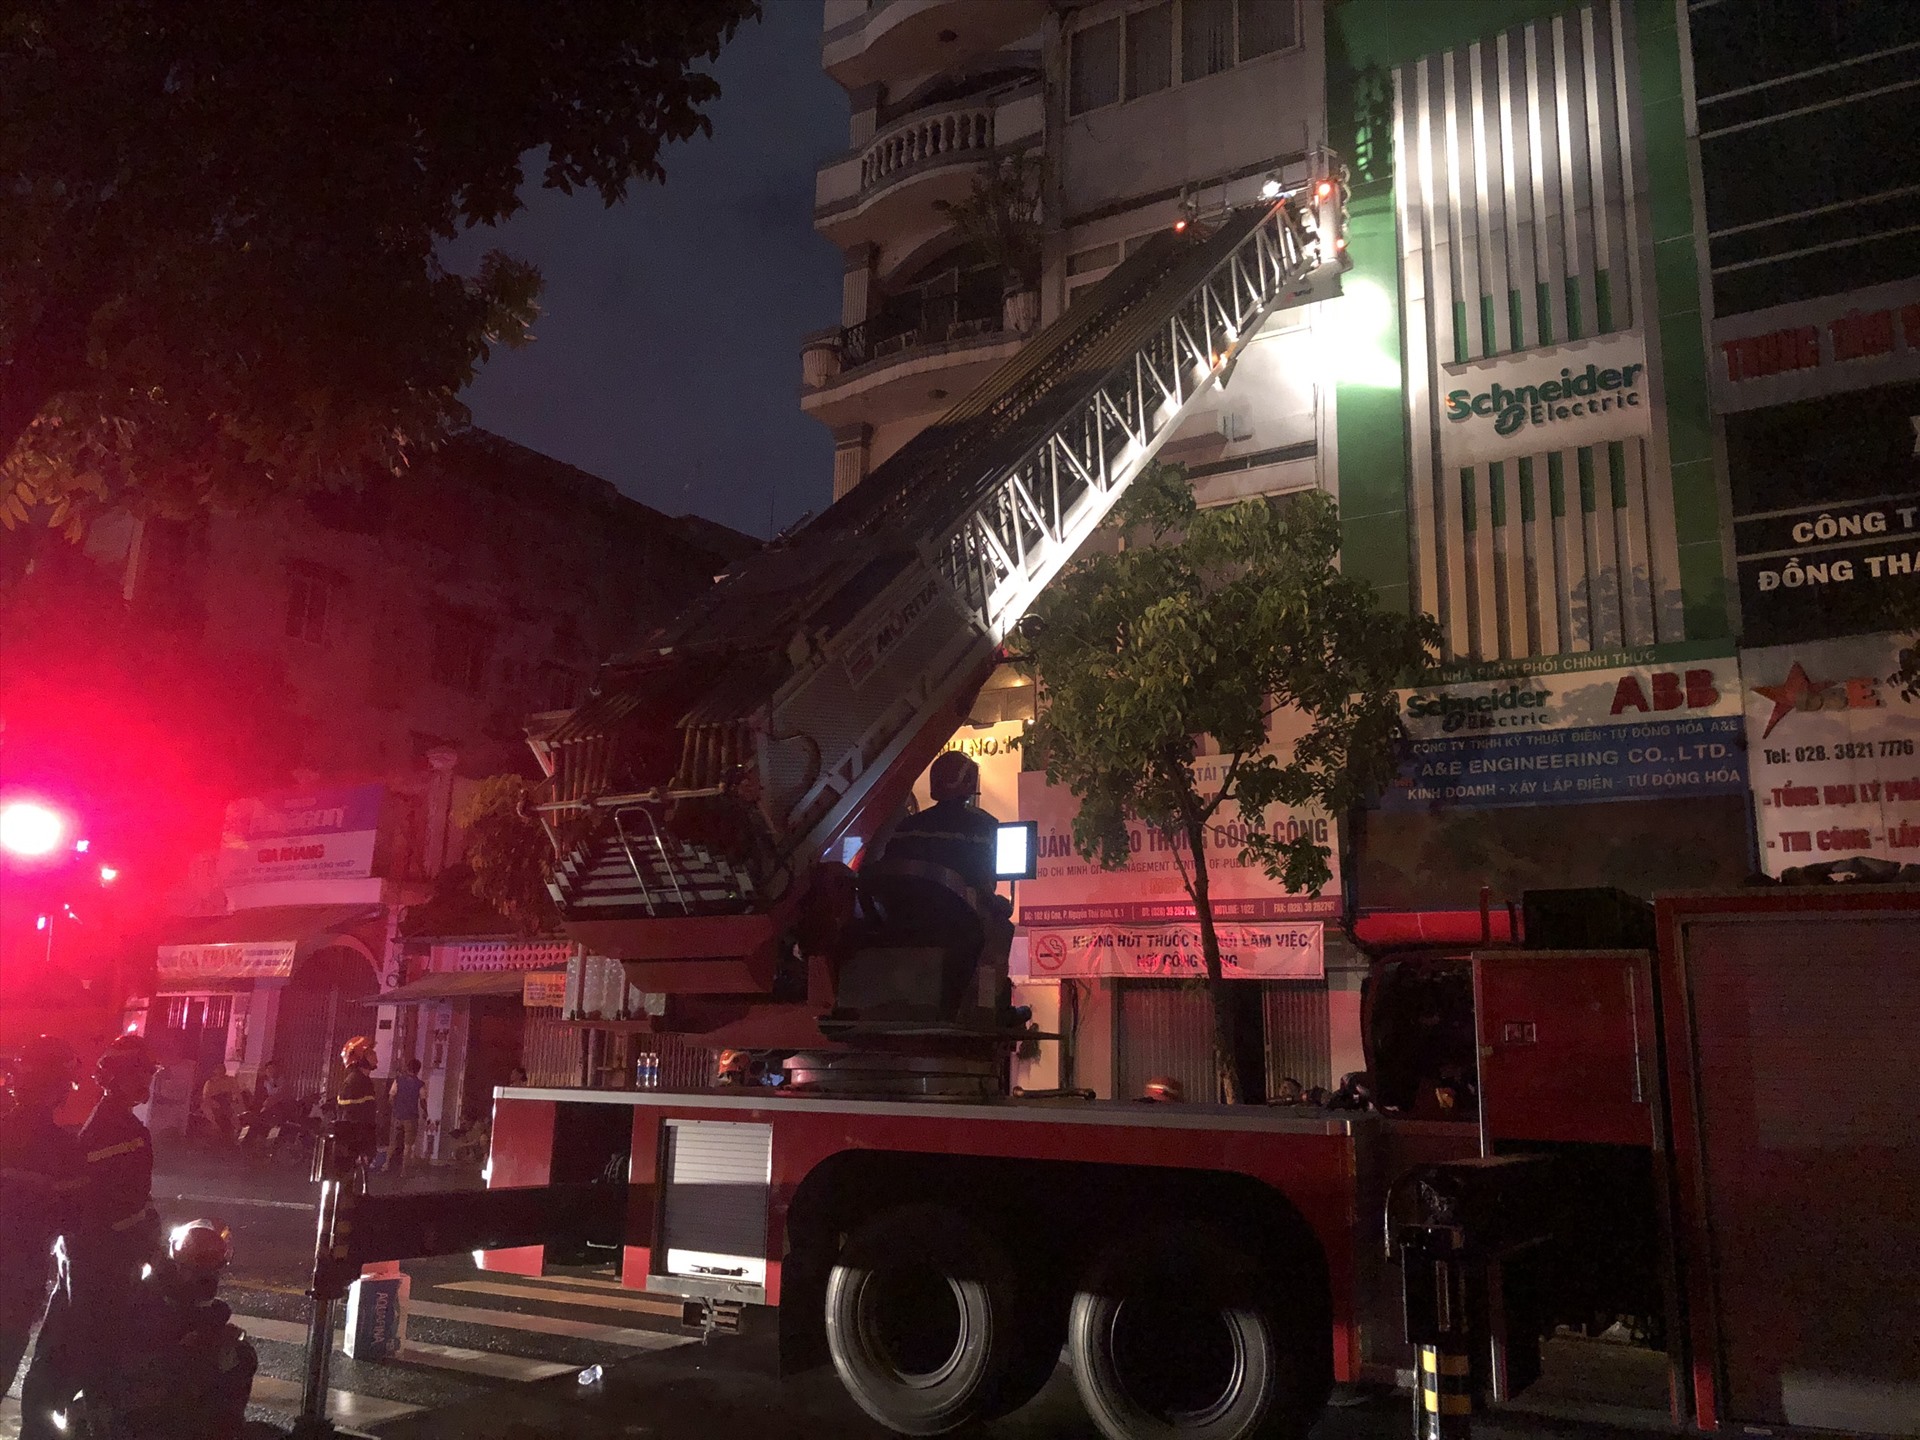 Cảnh sát dùng xe thang để chữa cháy, cũng như tim kiếm nạn nhân. Ảnh: Hữu Chánh